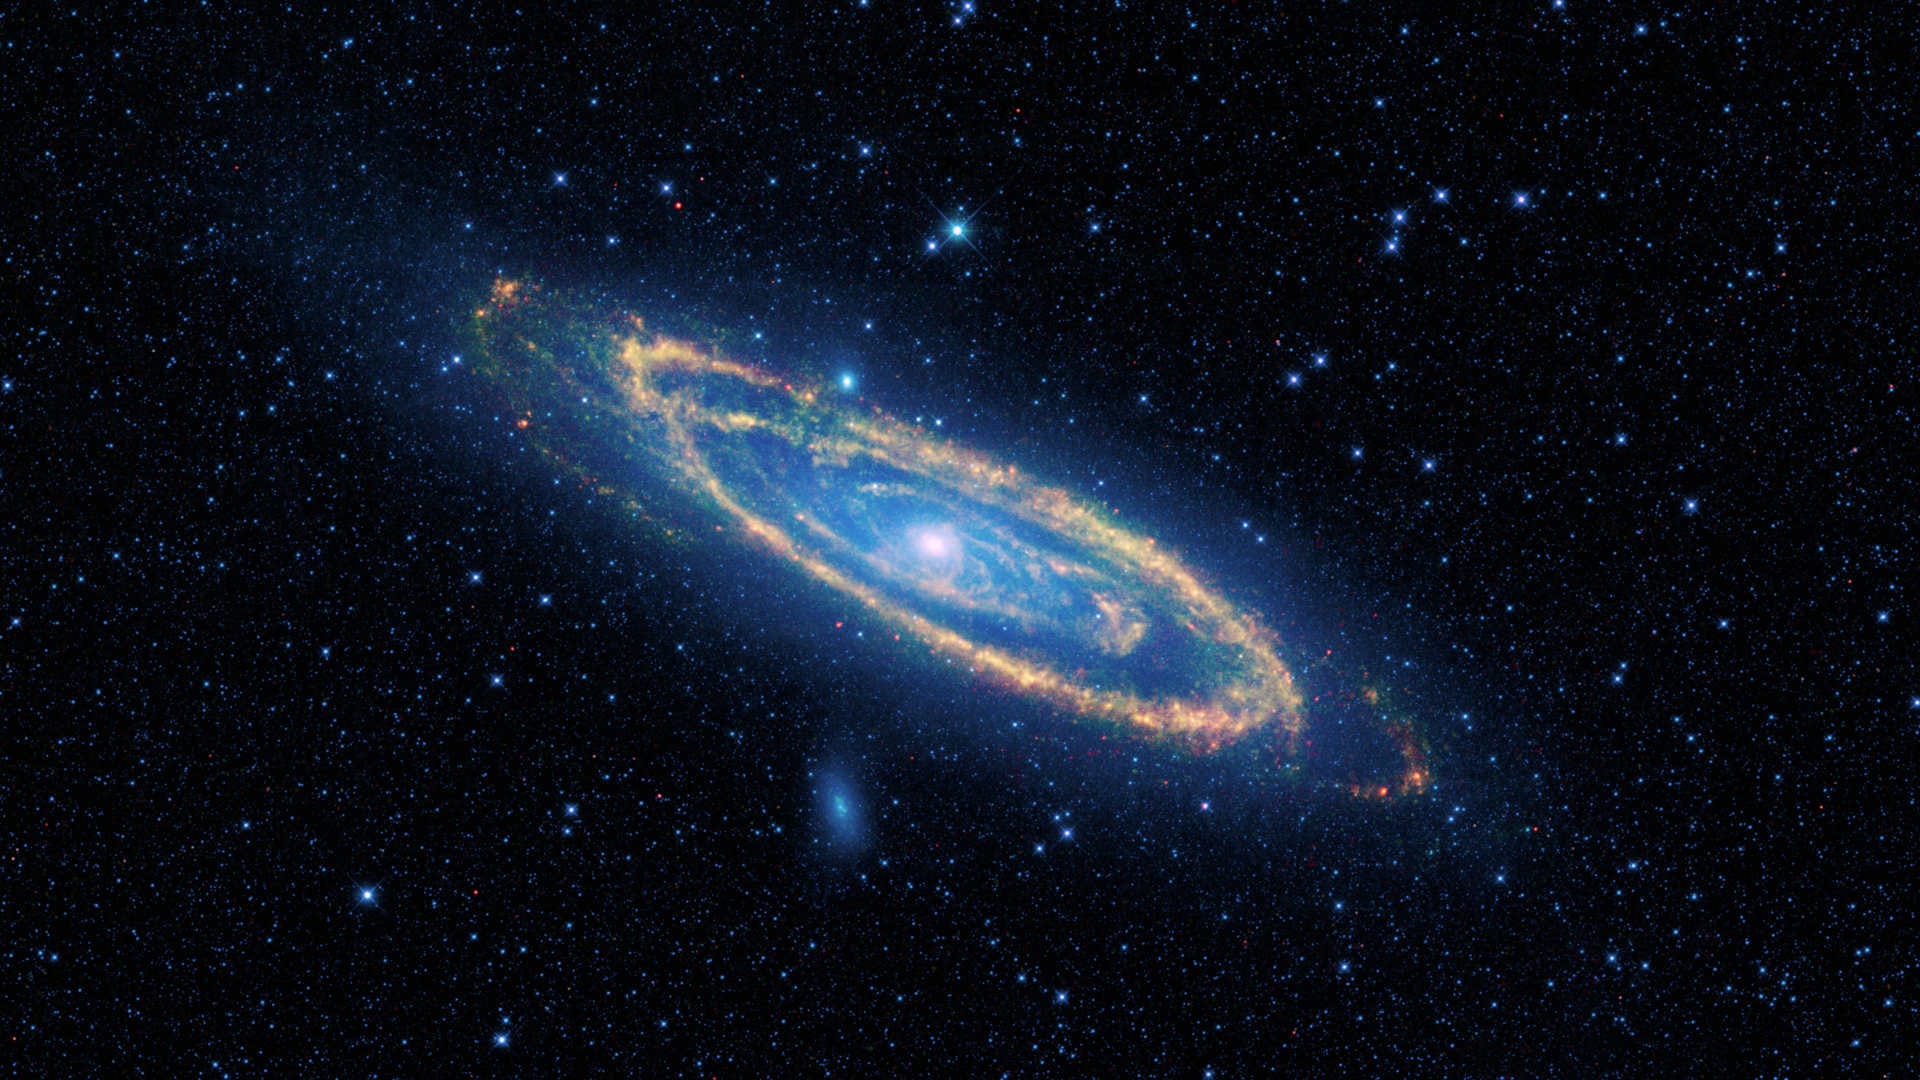 La galassia di Andromeda (M31) – Guarda la galassia gigante nelle notti senza luna